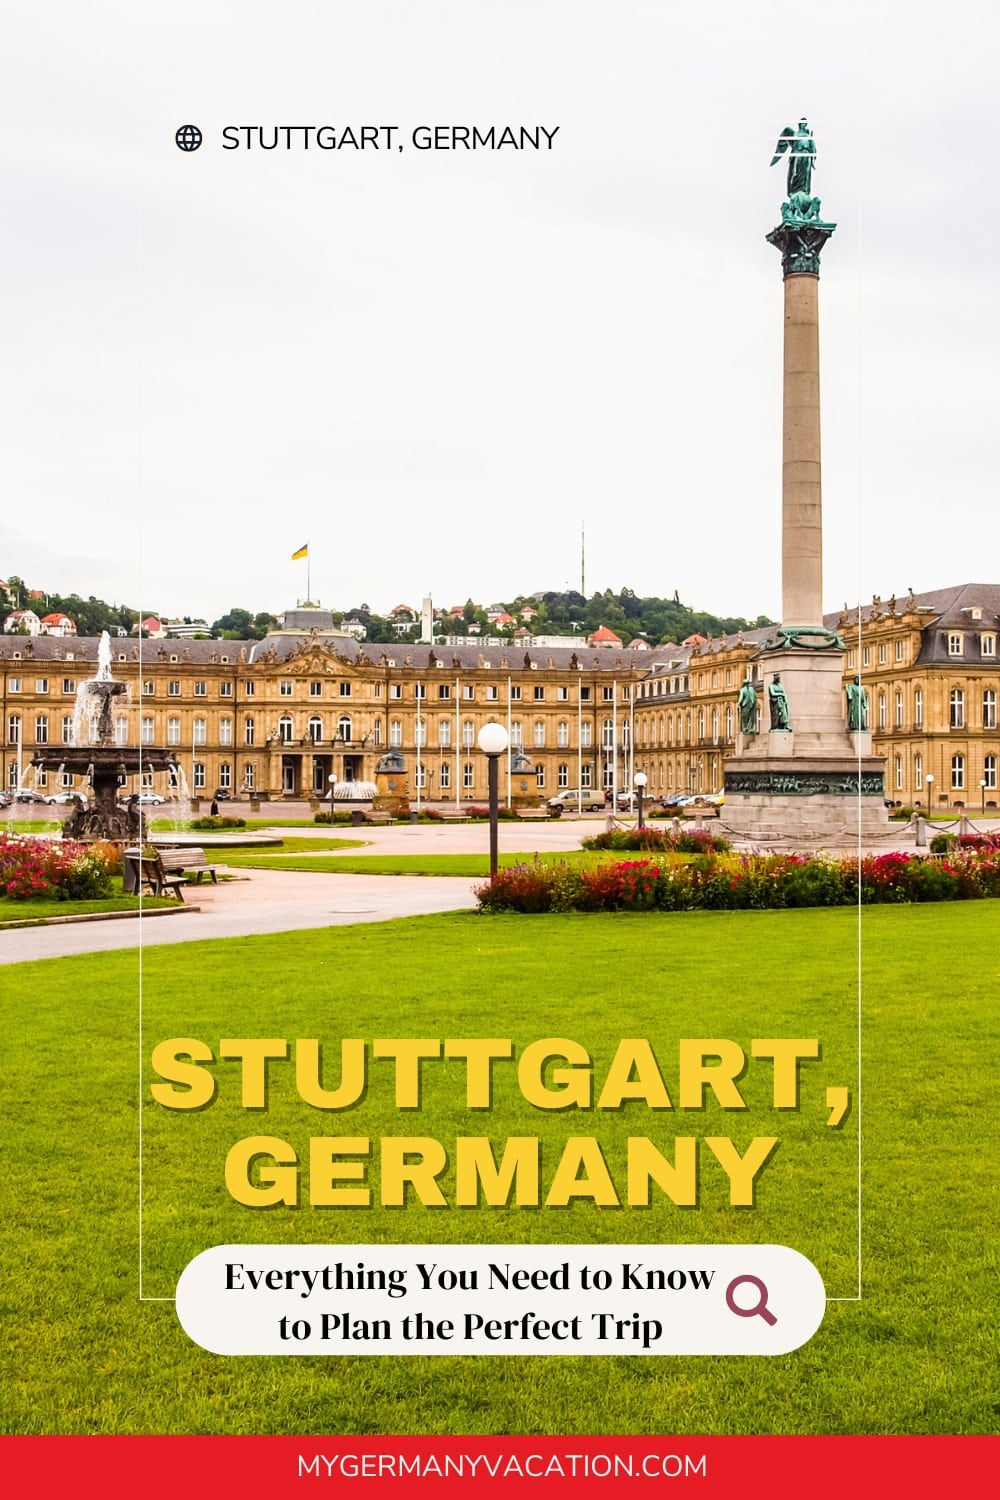 Image of Stuttgart, Germany guide